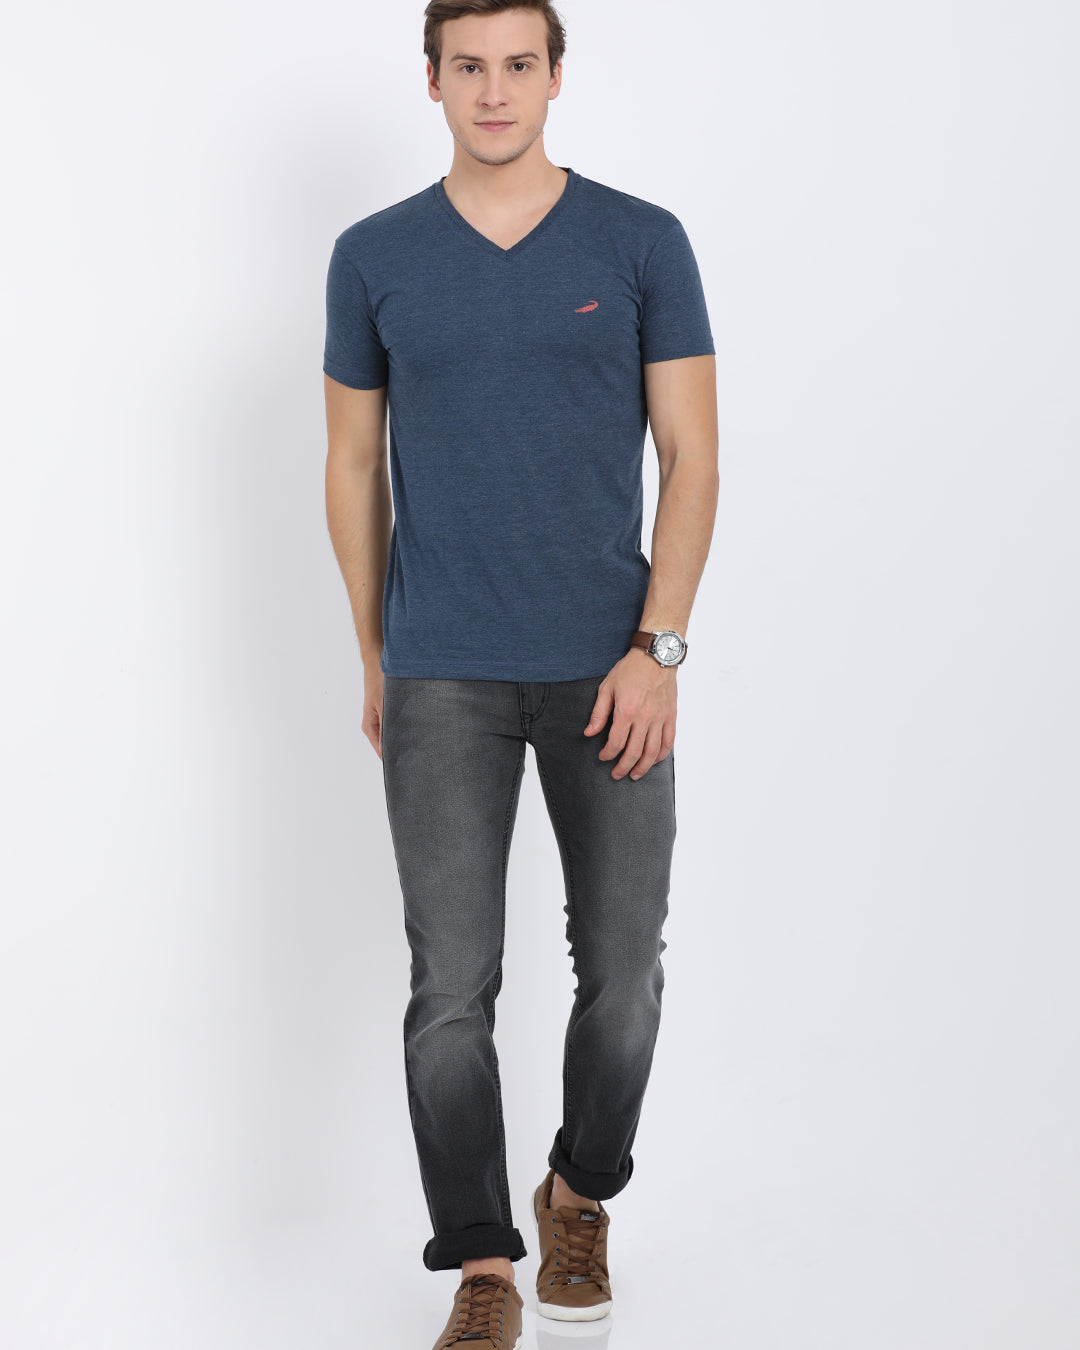 Men's Solid V Neck Half Sleeve Cotton T-Shirt - DENIM MELANGE